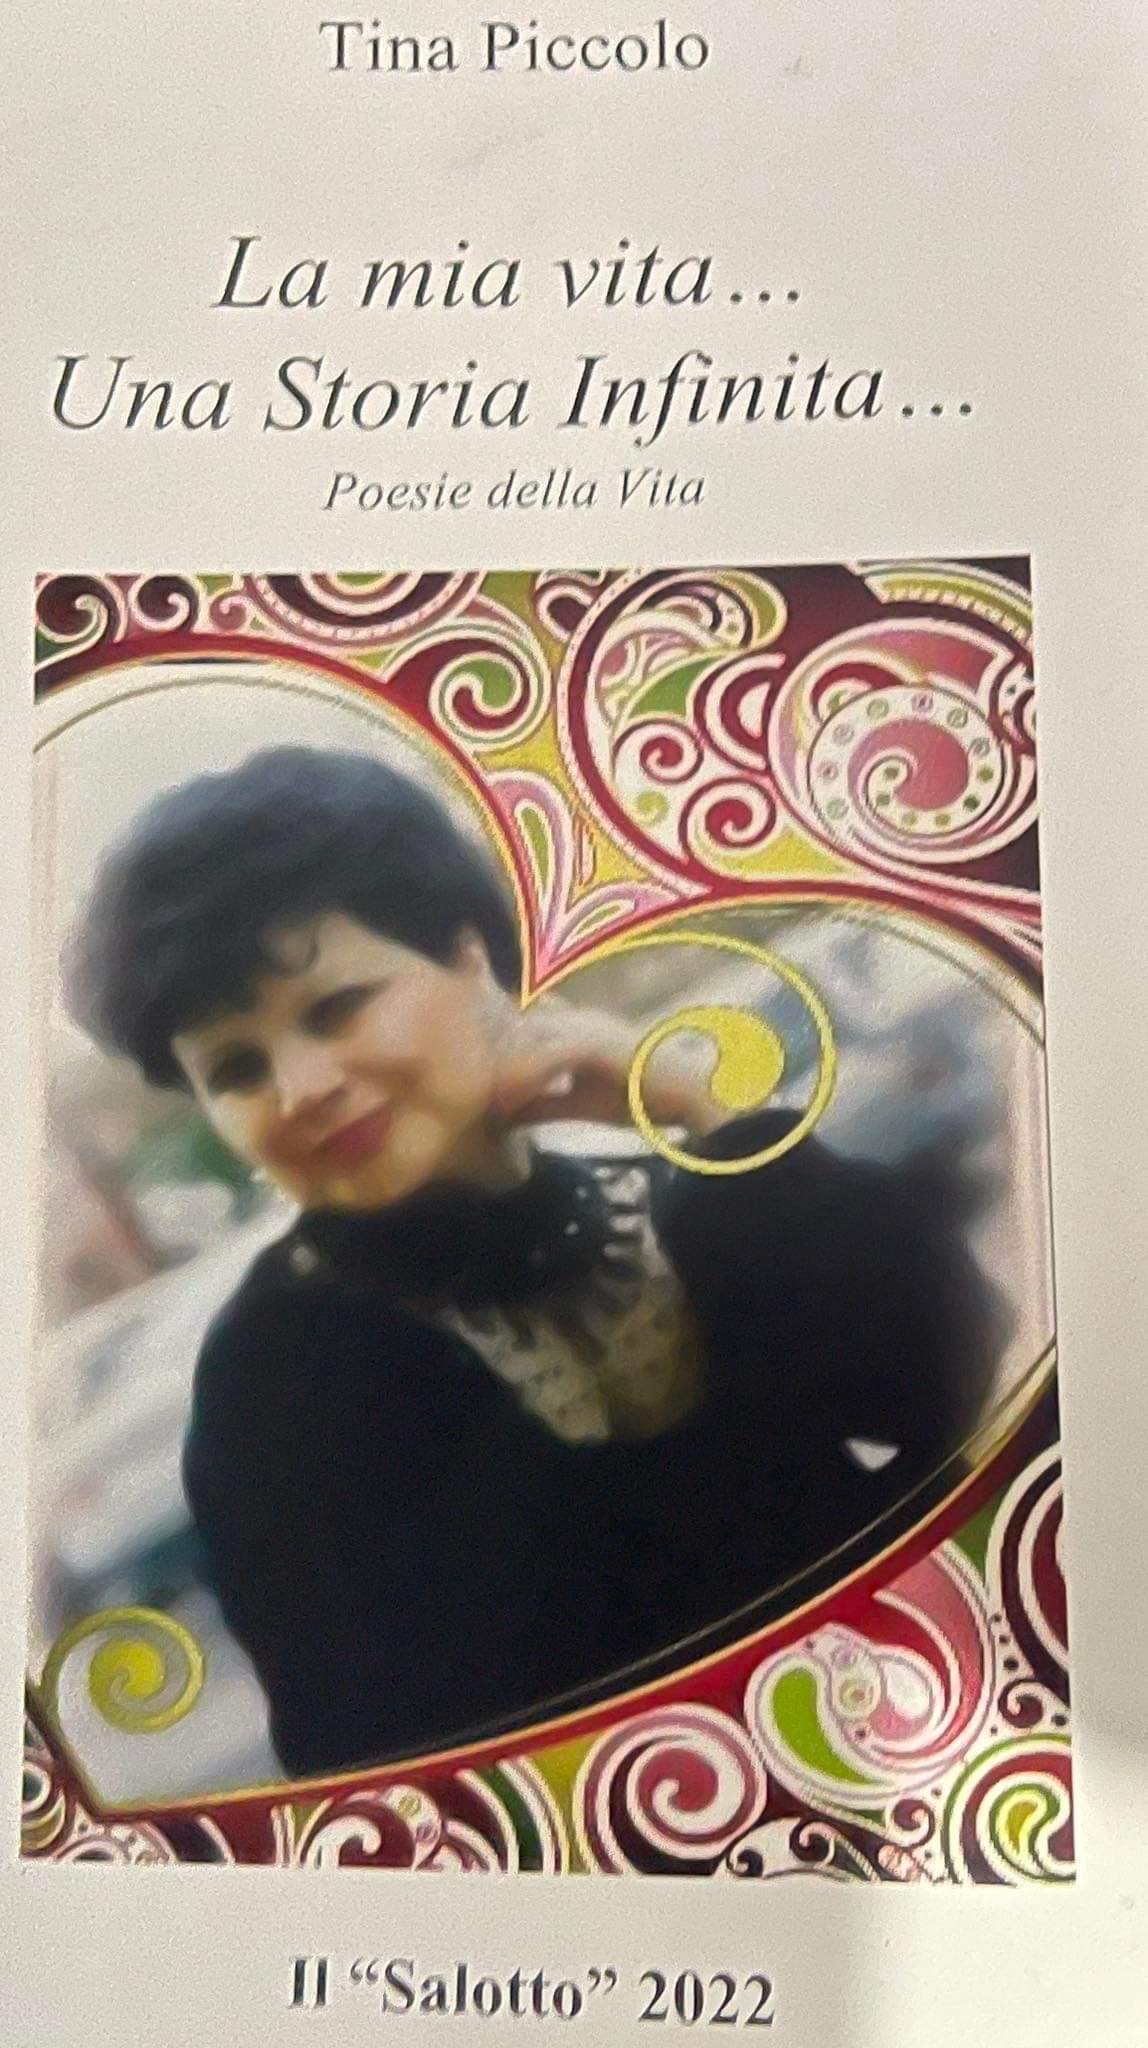 Tina Piccolo instancabile poetessa e promotrice di eventi culturali festeggia il suo quarantesimo libro